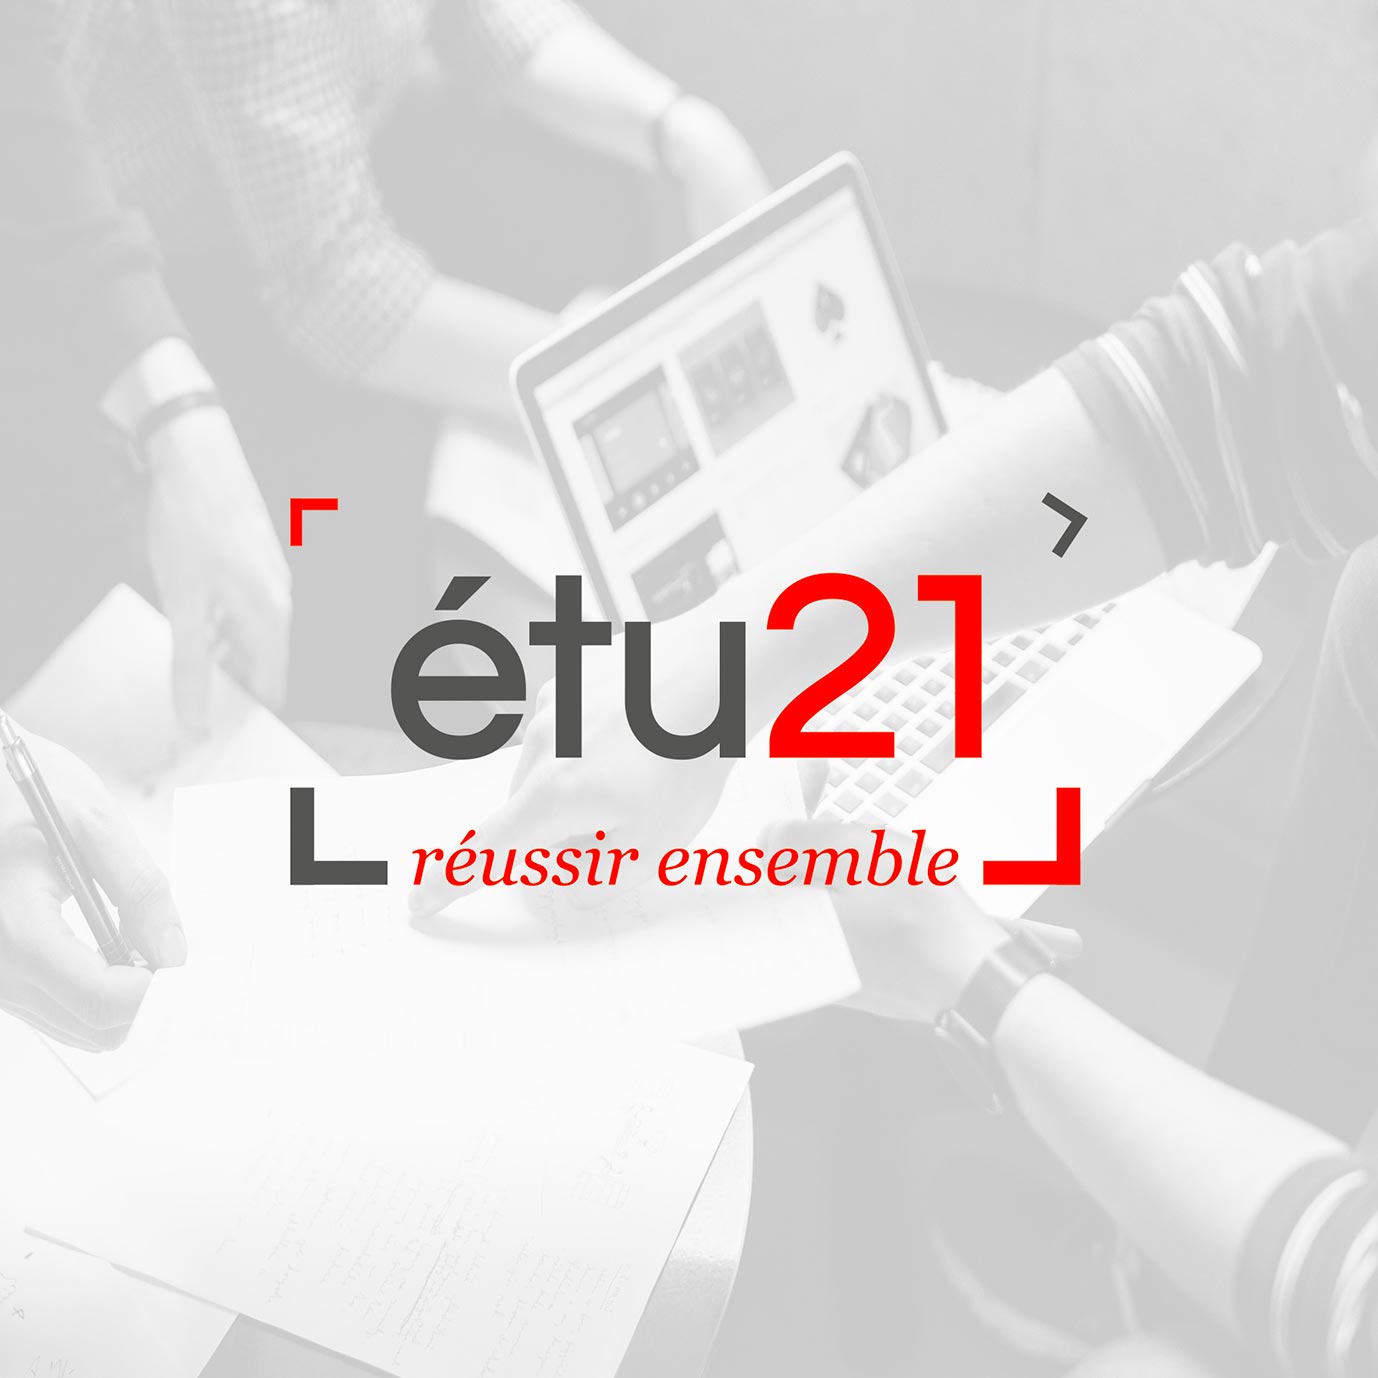 Création de logos et identités visuelles - étu21 - Graphistes freelance Hérault Montpellier Bézier Pézenas